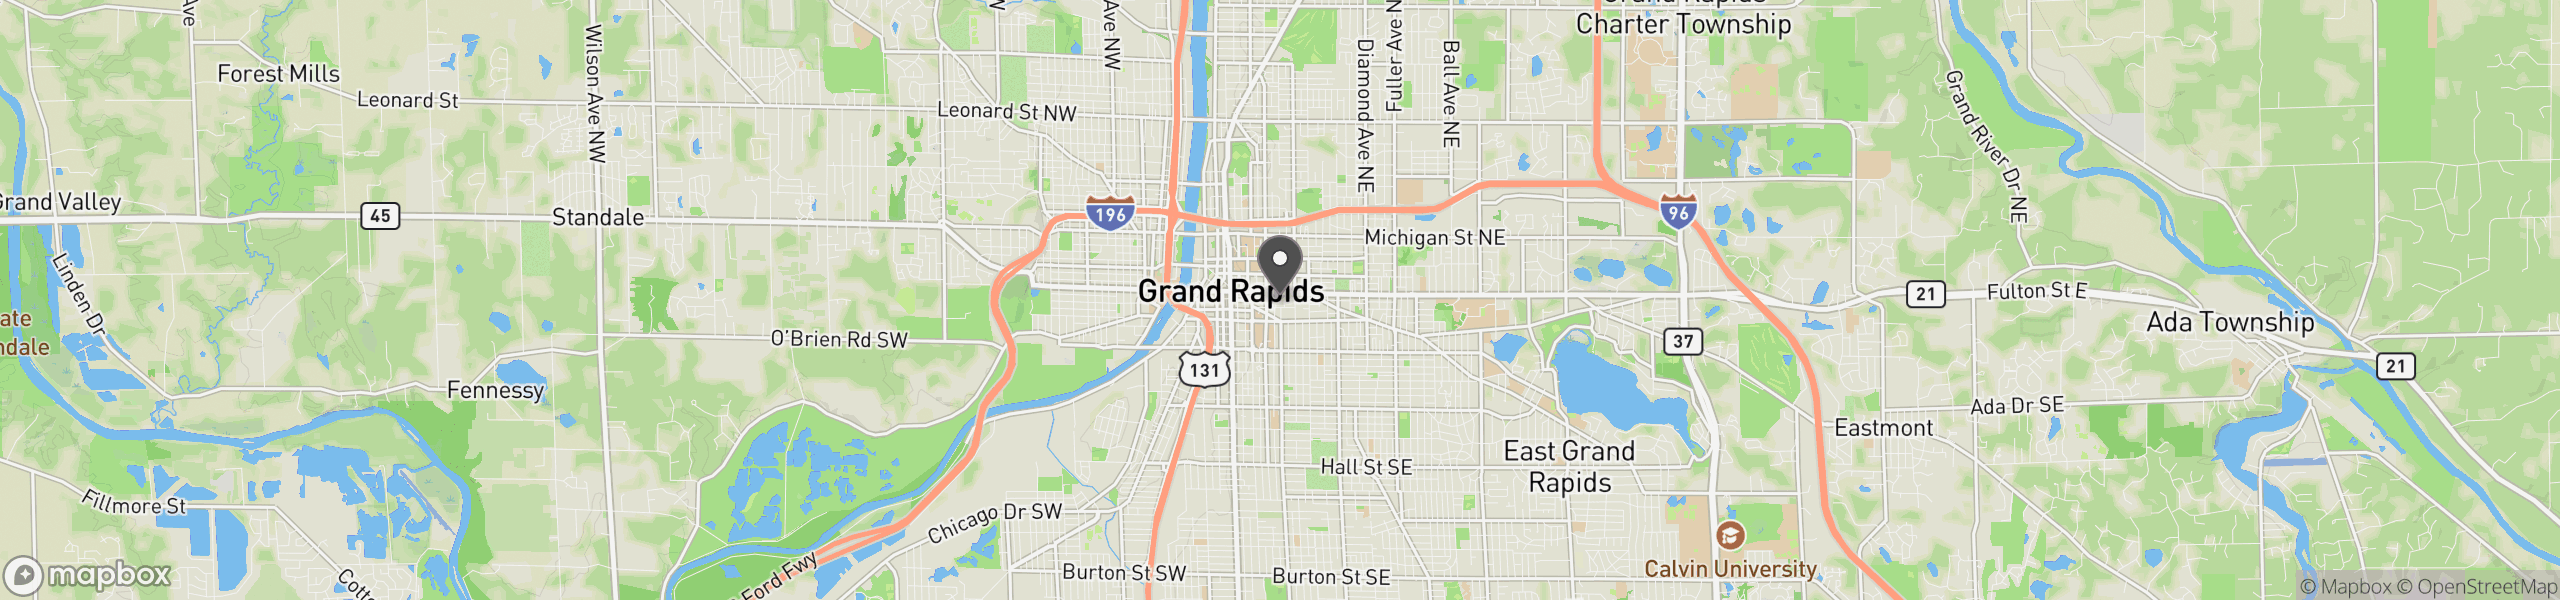 Grand Rapids, MI 49503